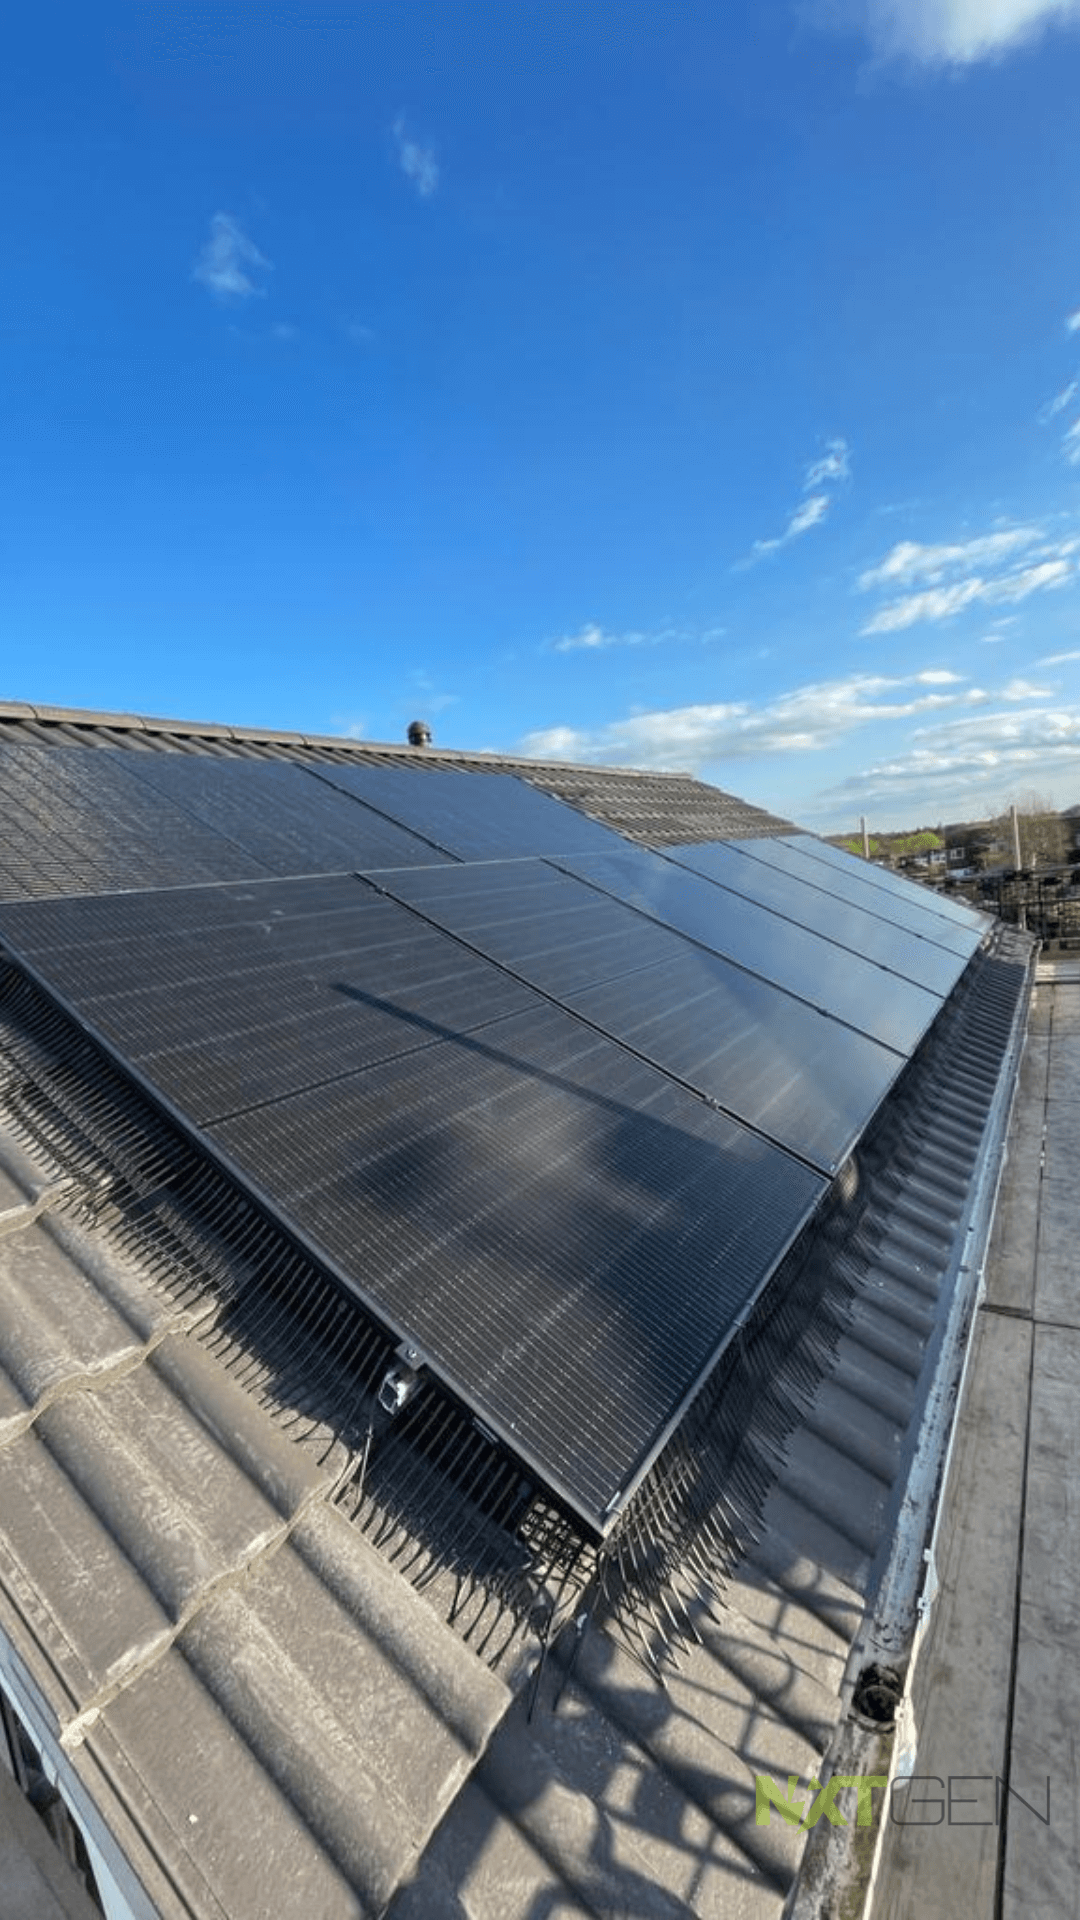 4 Solar Panels Install on Dormer Roof Photo